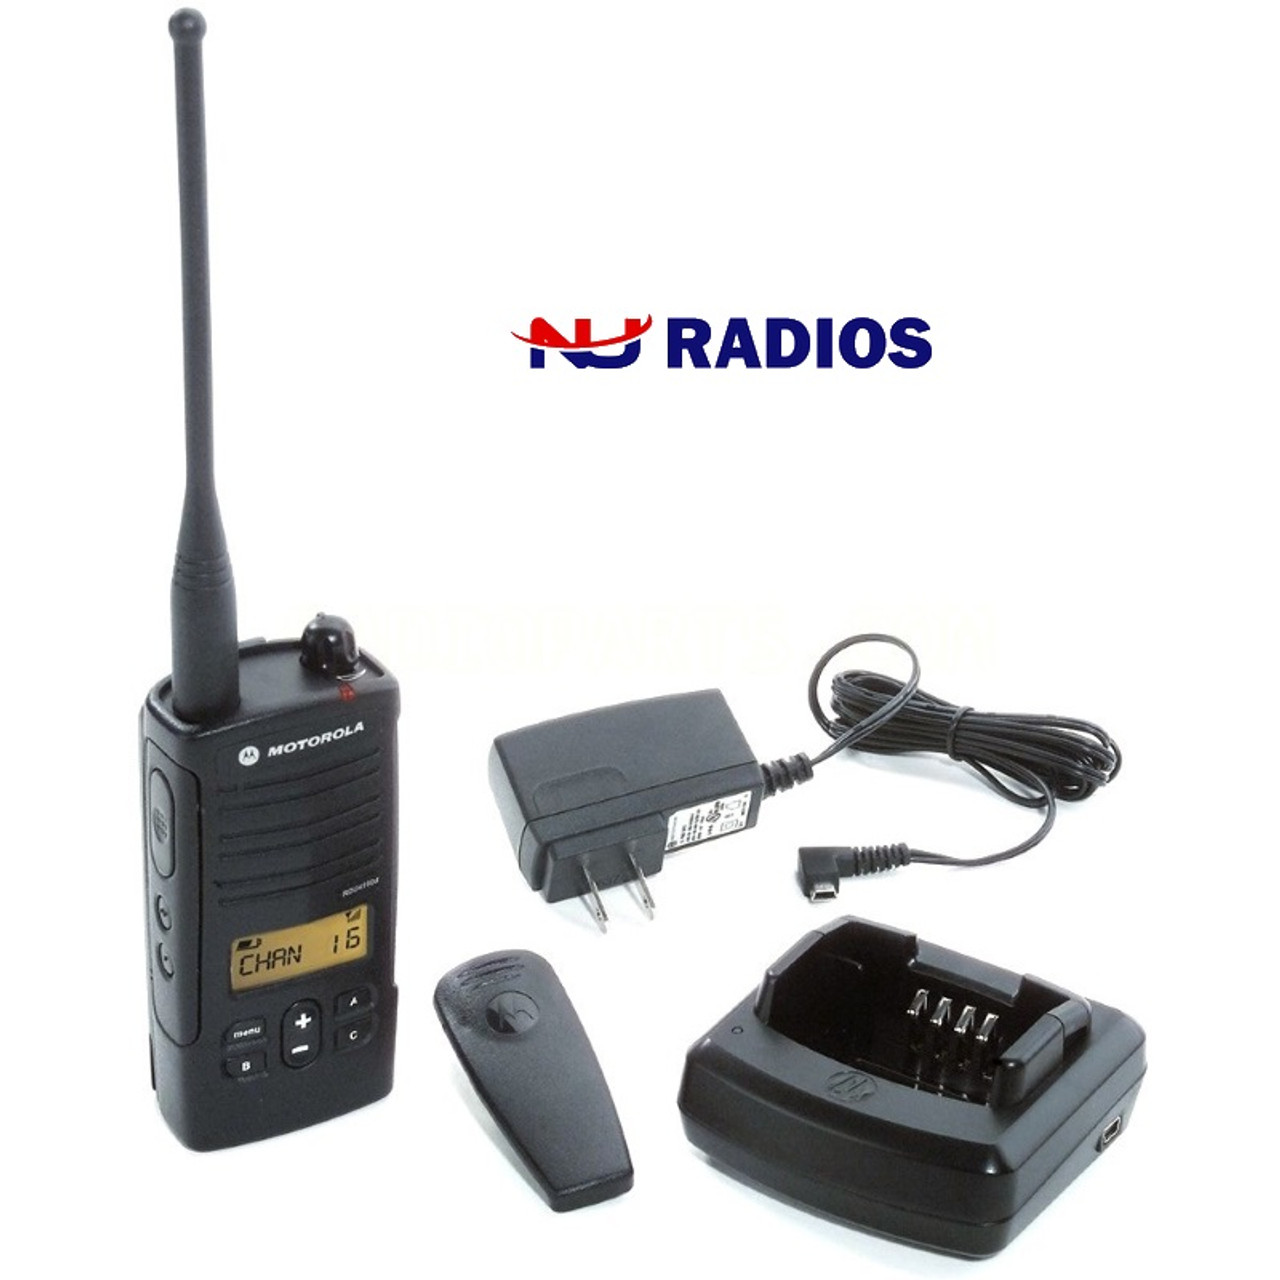 Pack of Motorola RDU4160d Two Way Radio Walkie Talkies - 4